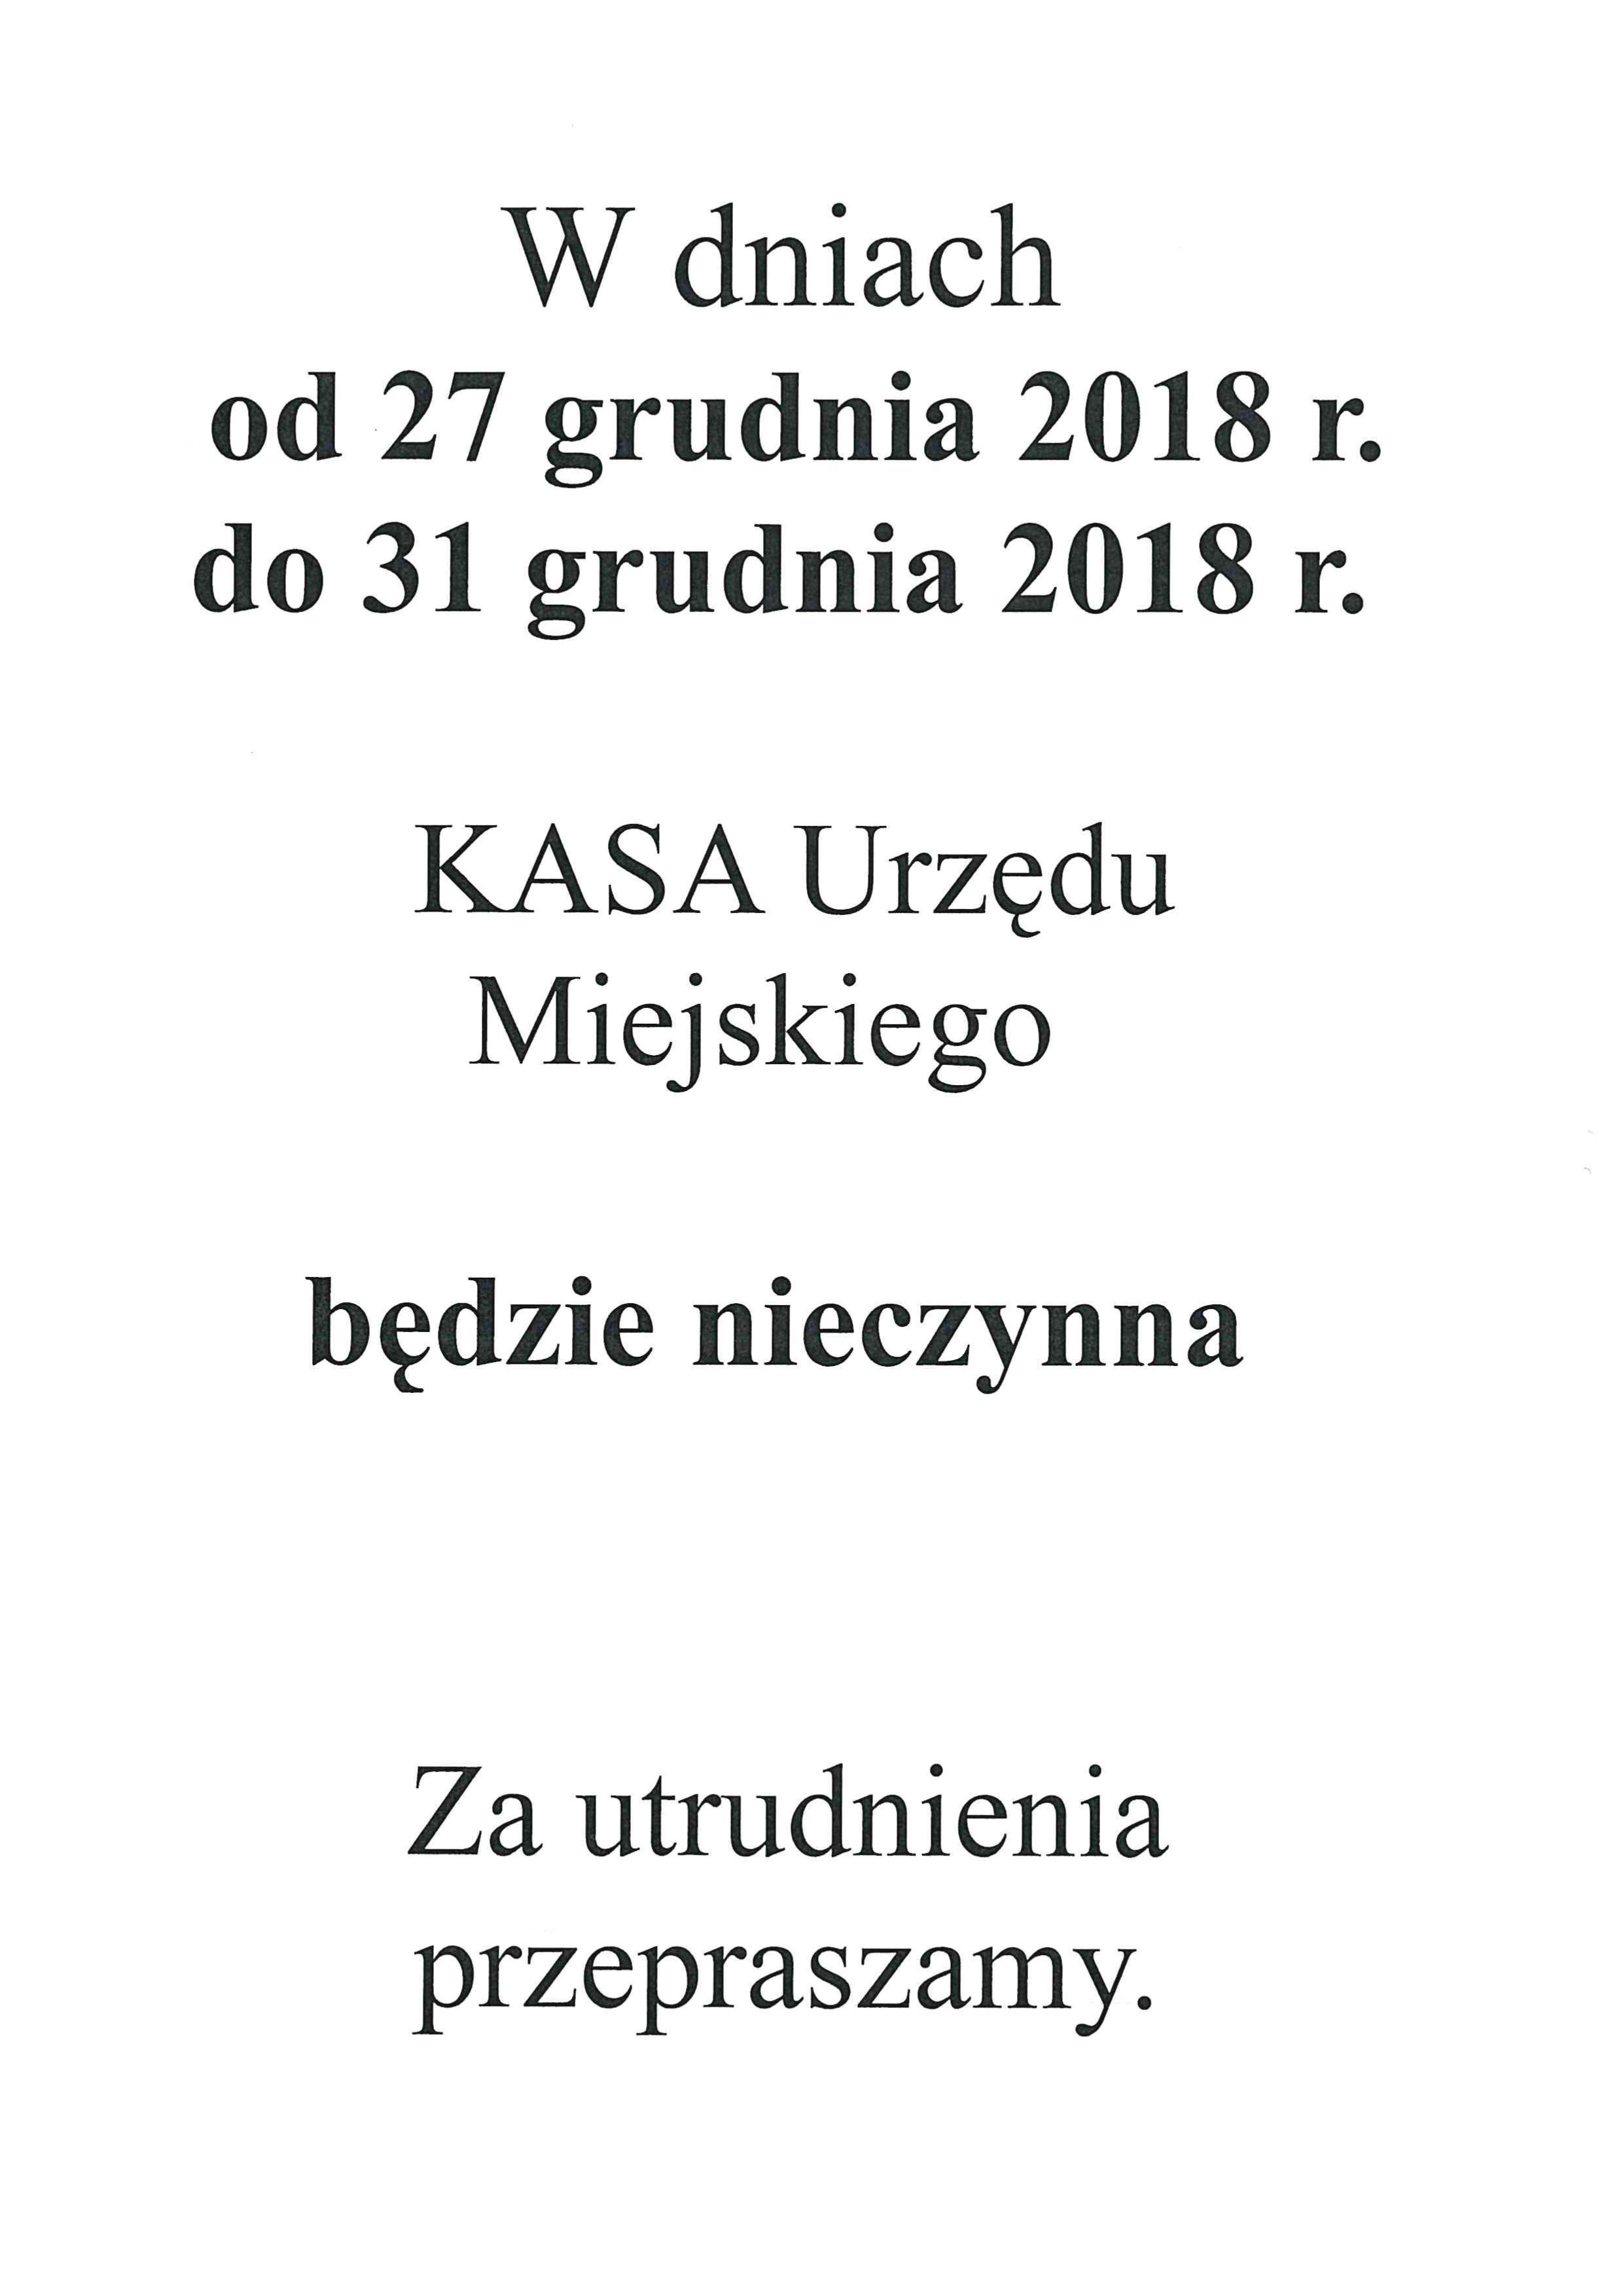    20181212_kasa_nieczynna.jpg